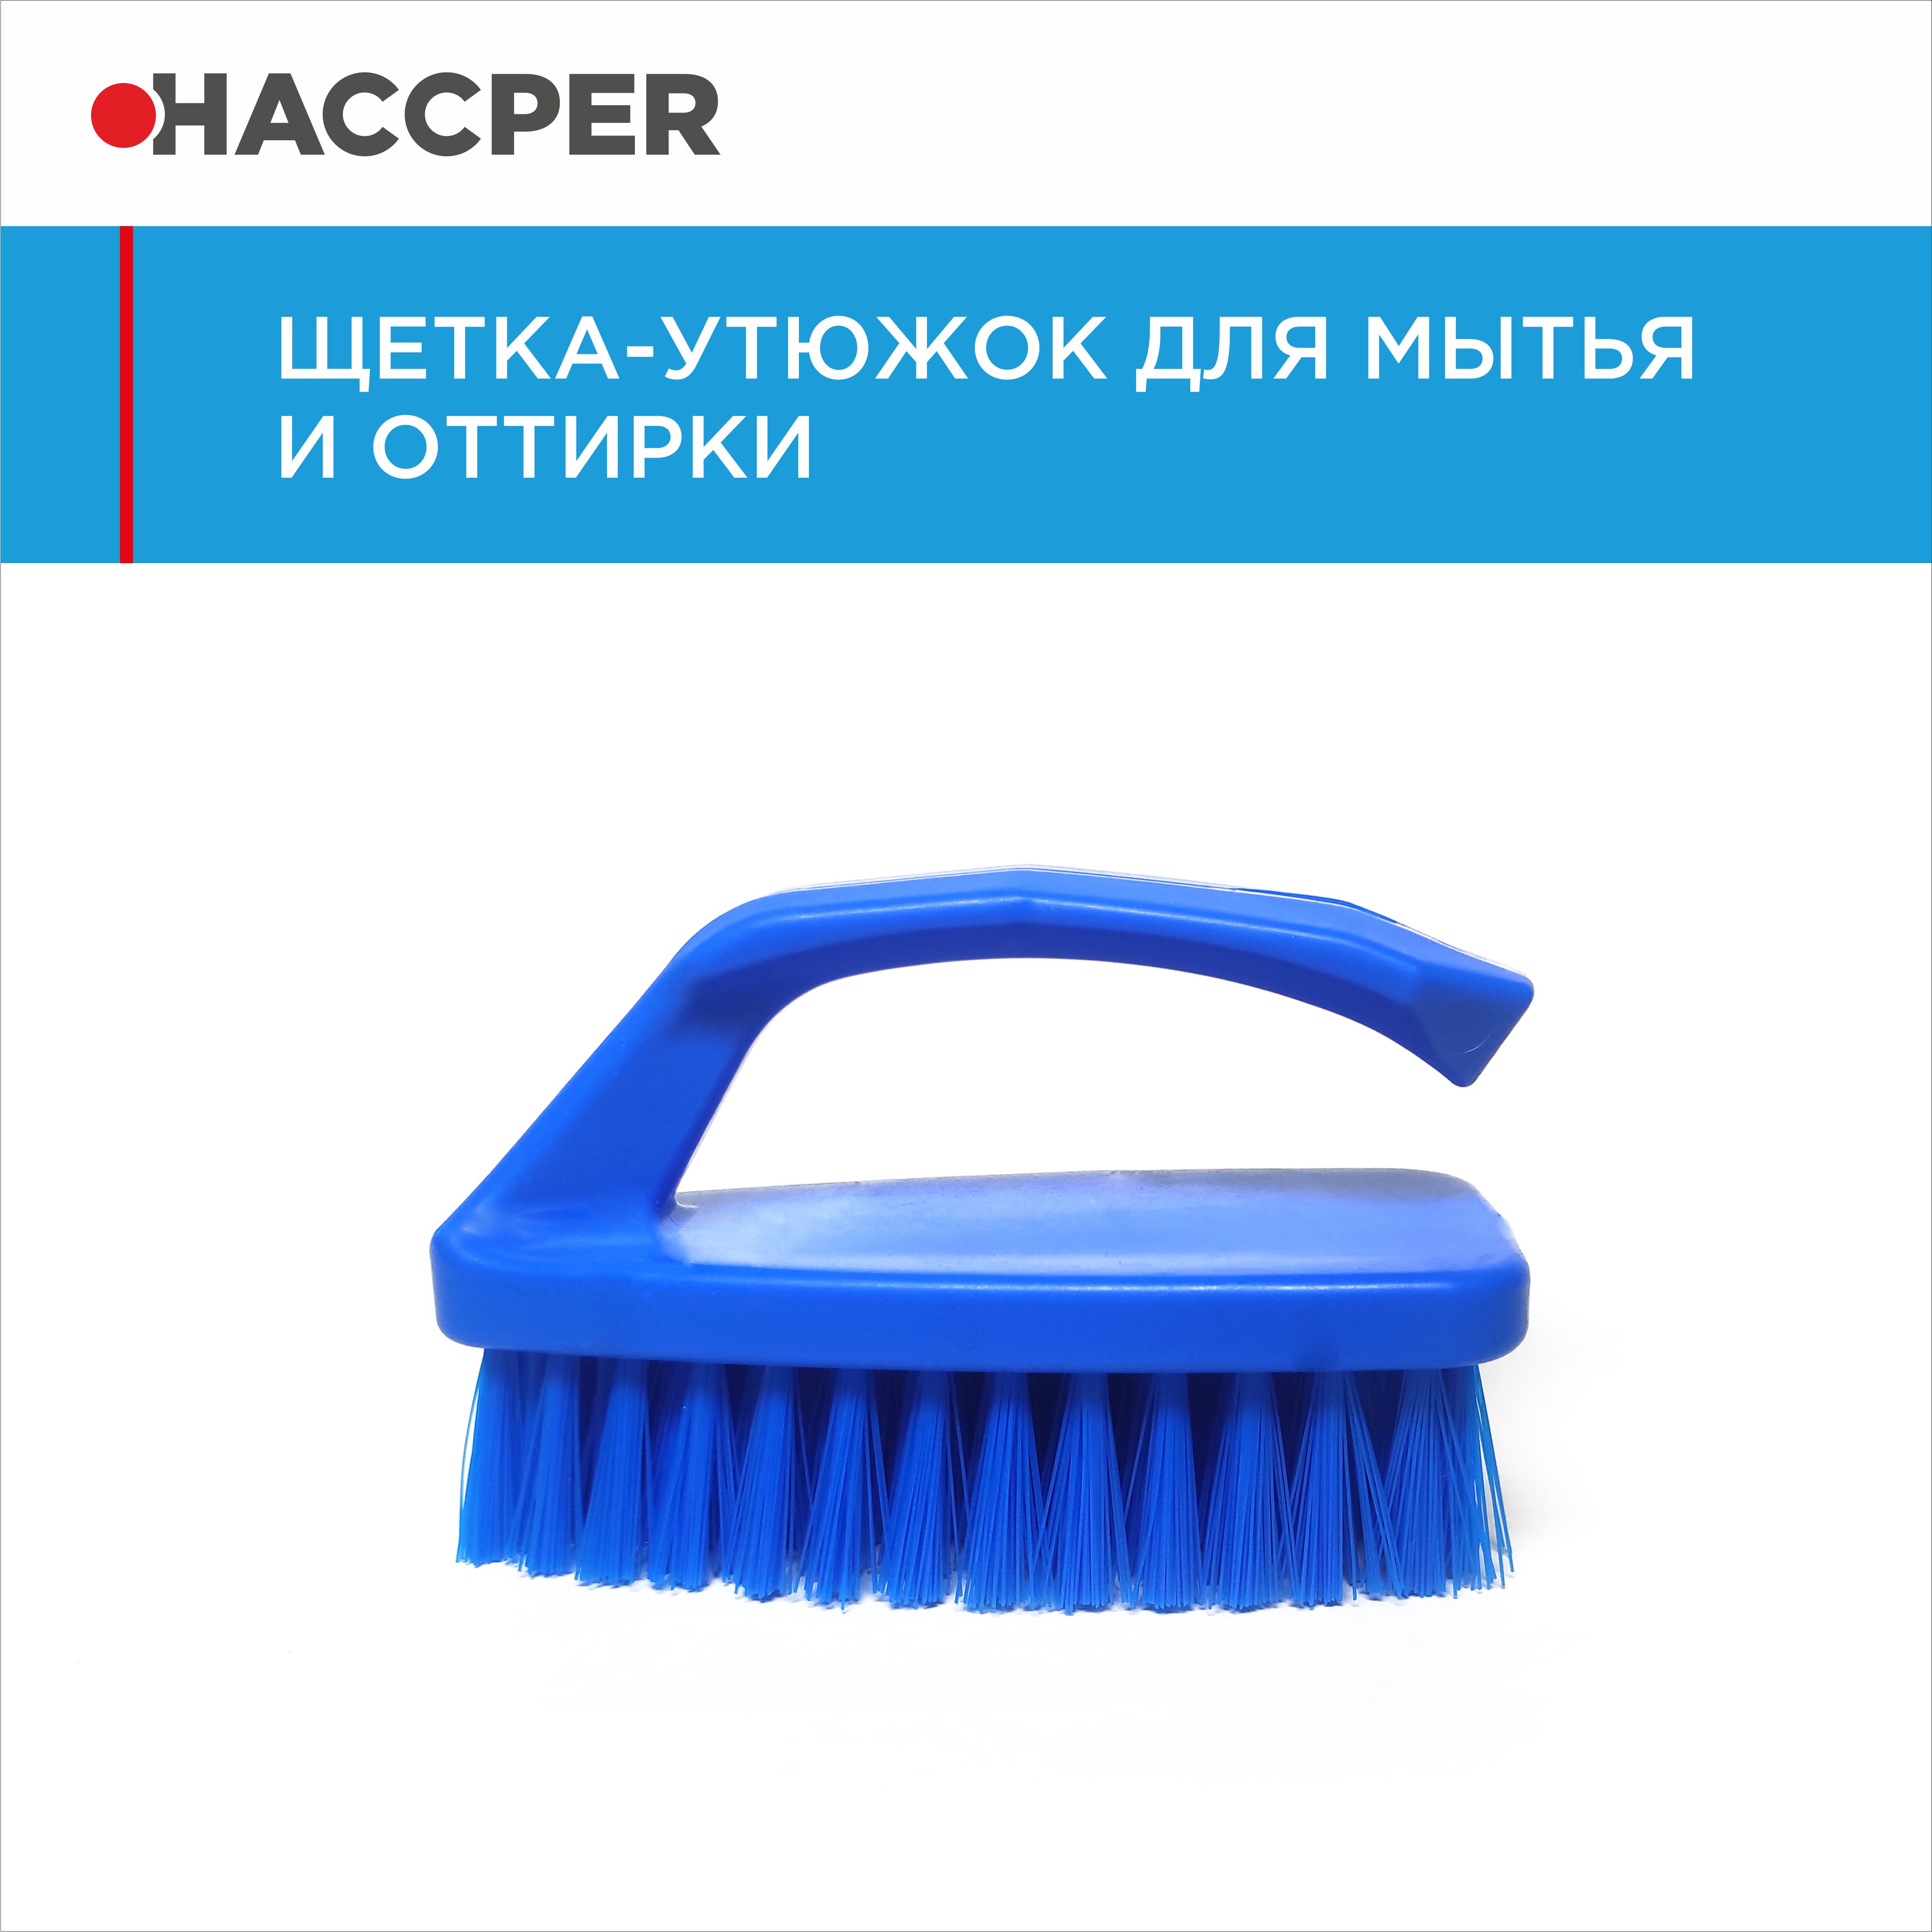 Щетка-утюжок HACCPER для мытья и оттирки, синяя